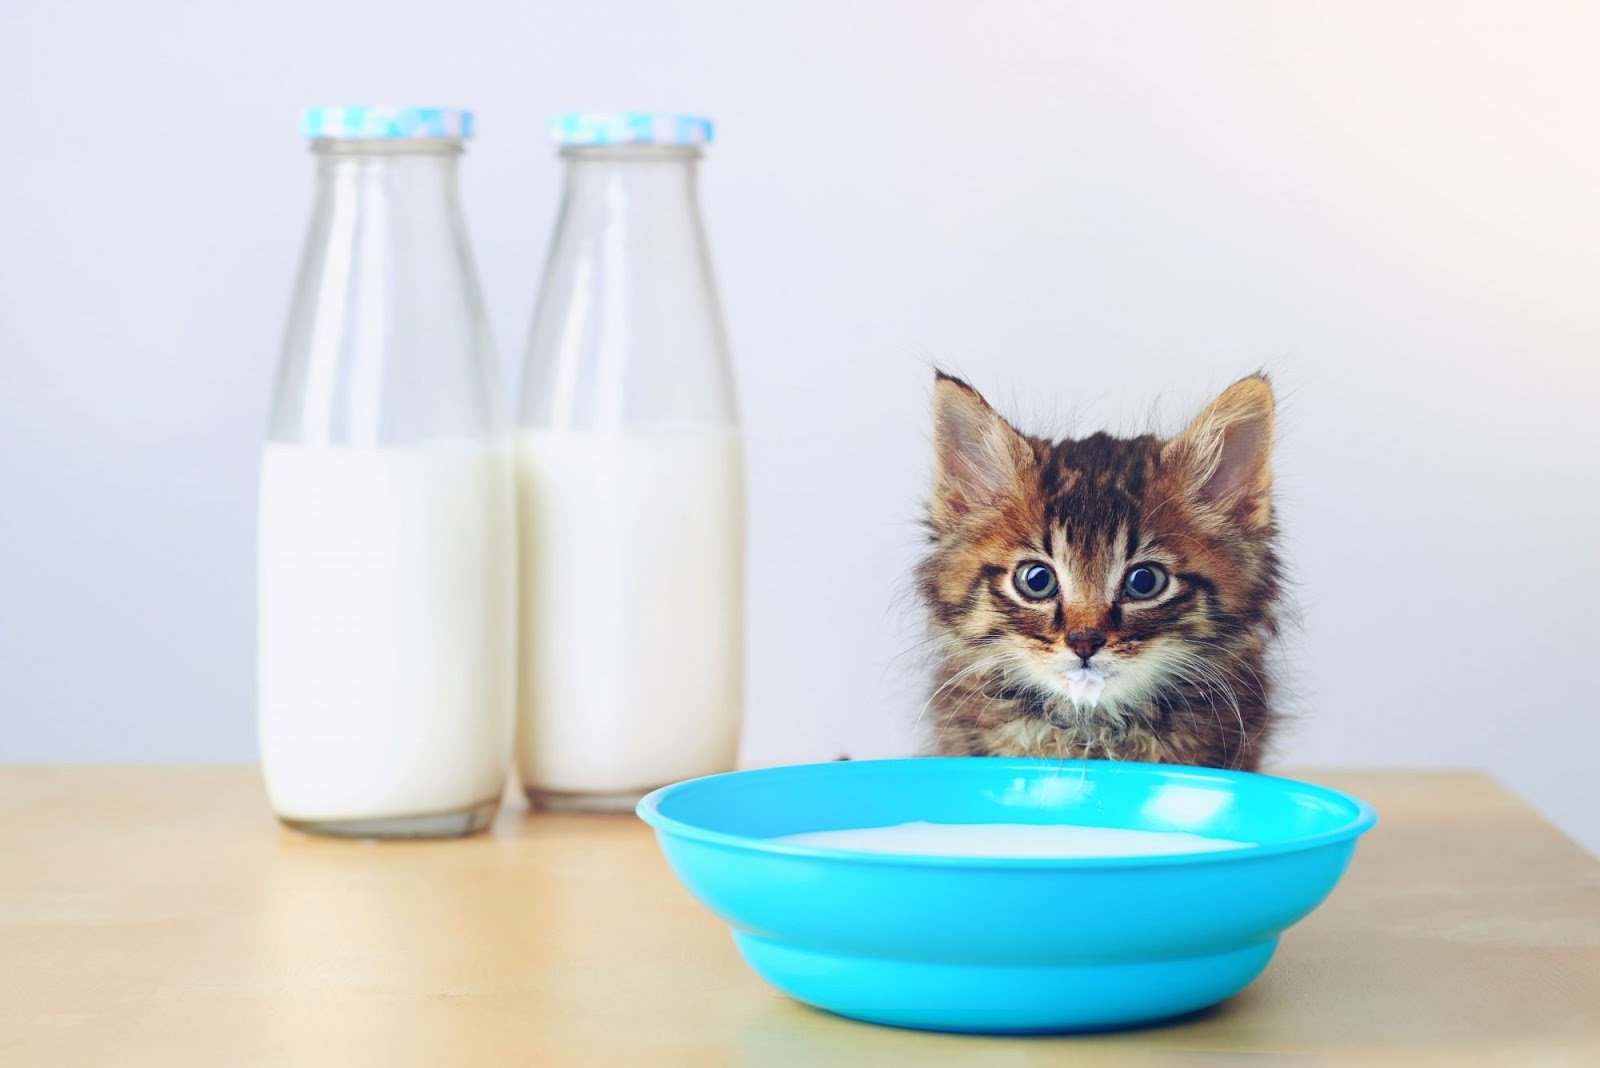 حليب خالي من اللاكتوز للقطط، قطة أمامها وعاء مليء بالحليب